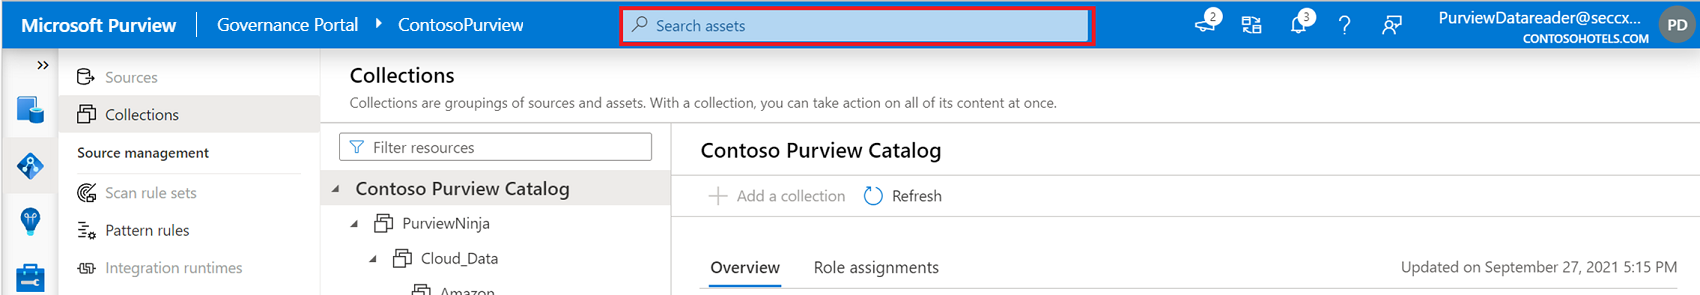 Captura de tela mostrando o local da barra de pesquisa do Microsoft Purview